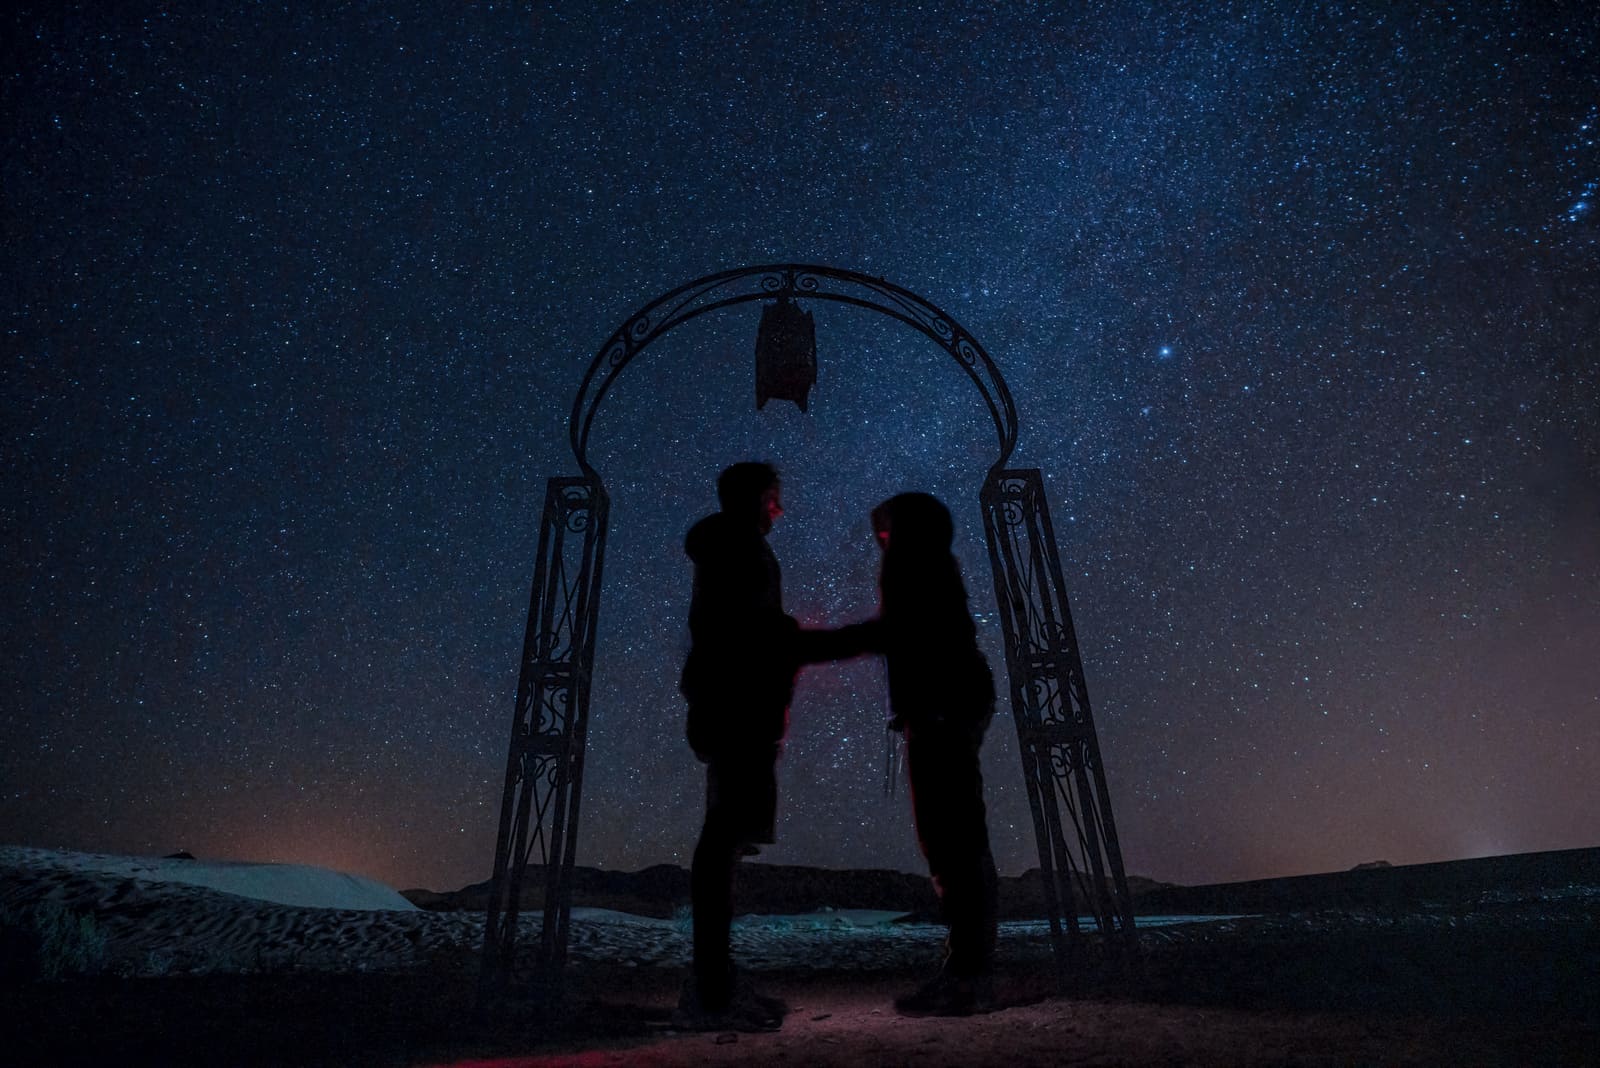 Nachtsilhouette eines verliebten Paares Händchen haltend in der Wüste unter den Sternen